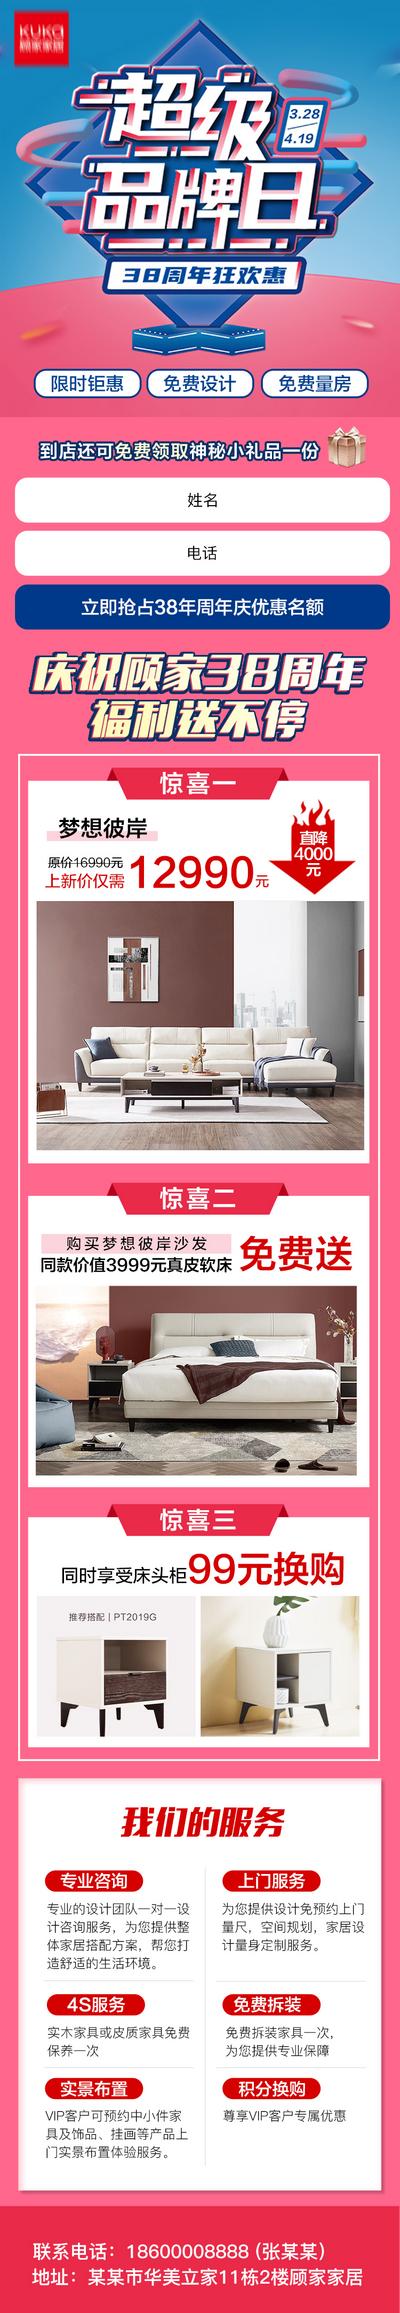 【南门网】H5 专题设计 家居 家具 品牌 活动 促销 周年庆